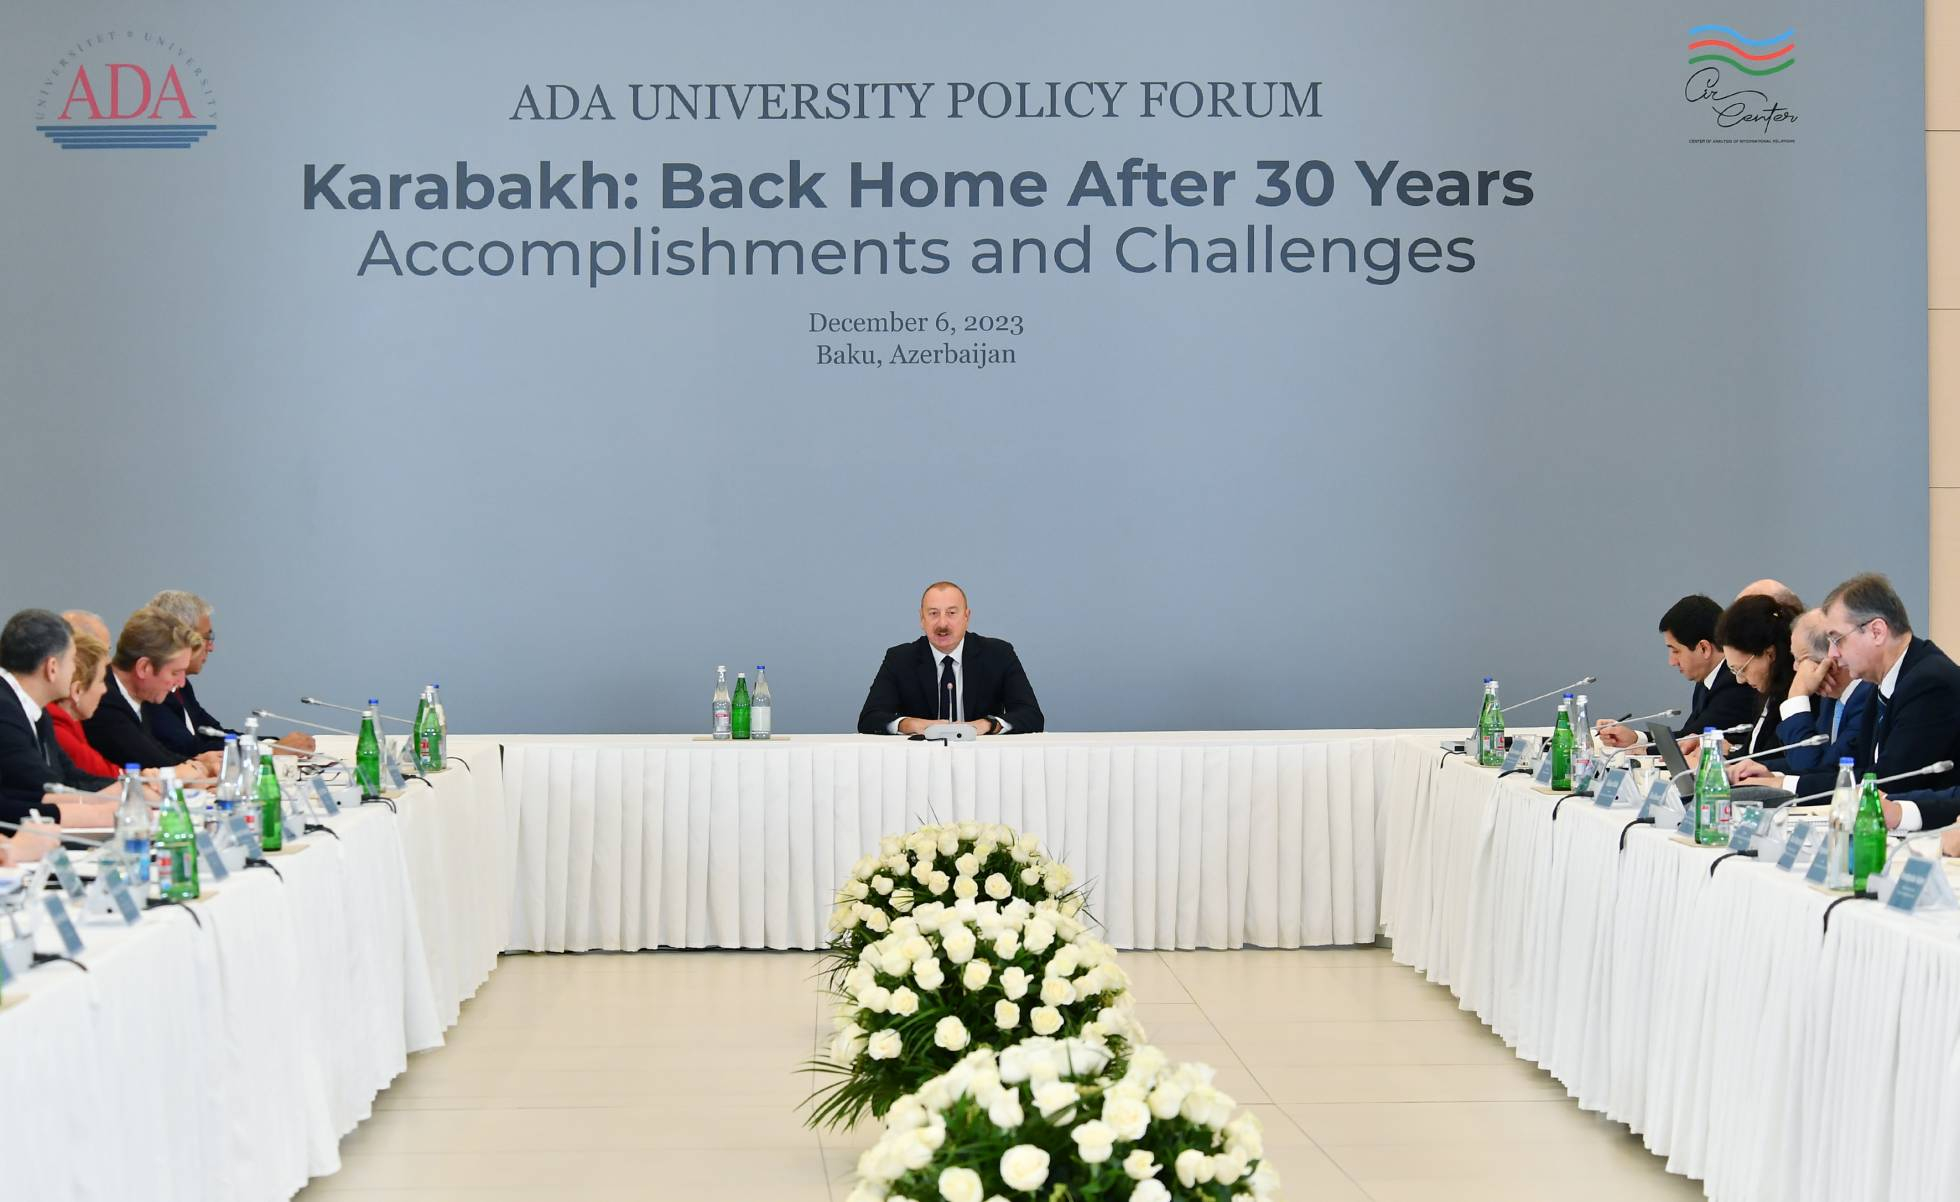 Президент Азербайджана: Франция и Индия, вооружая Армению, как говорится, подливают масла в огонь